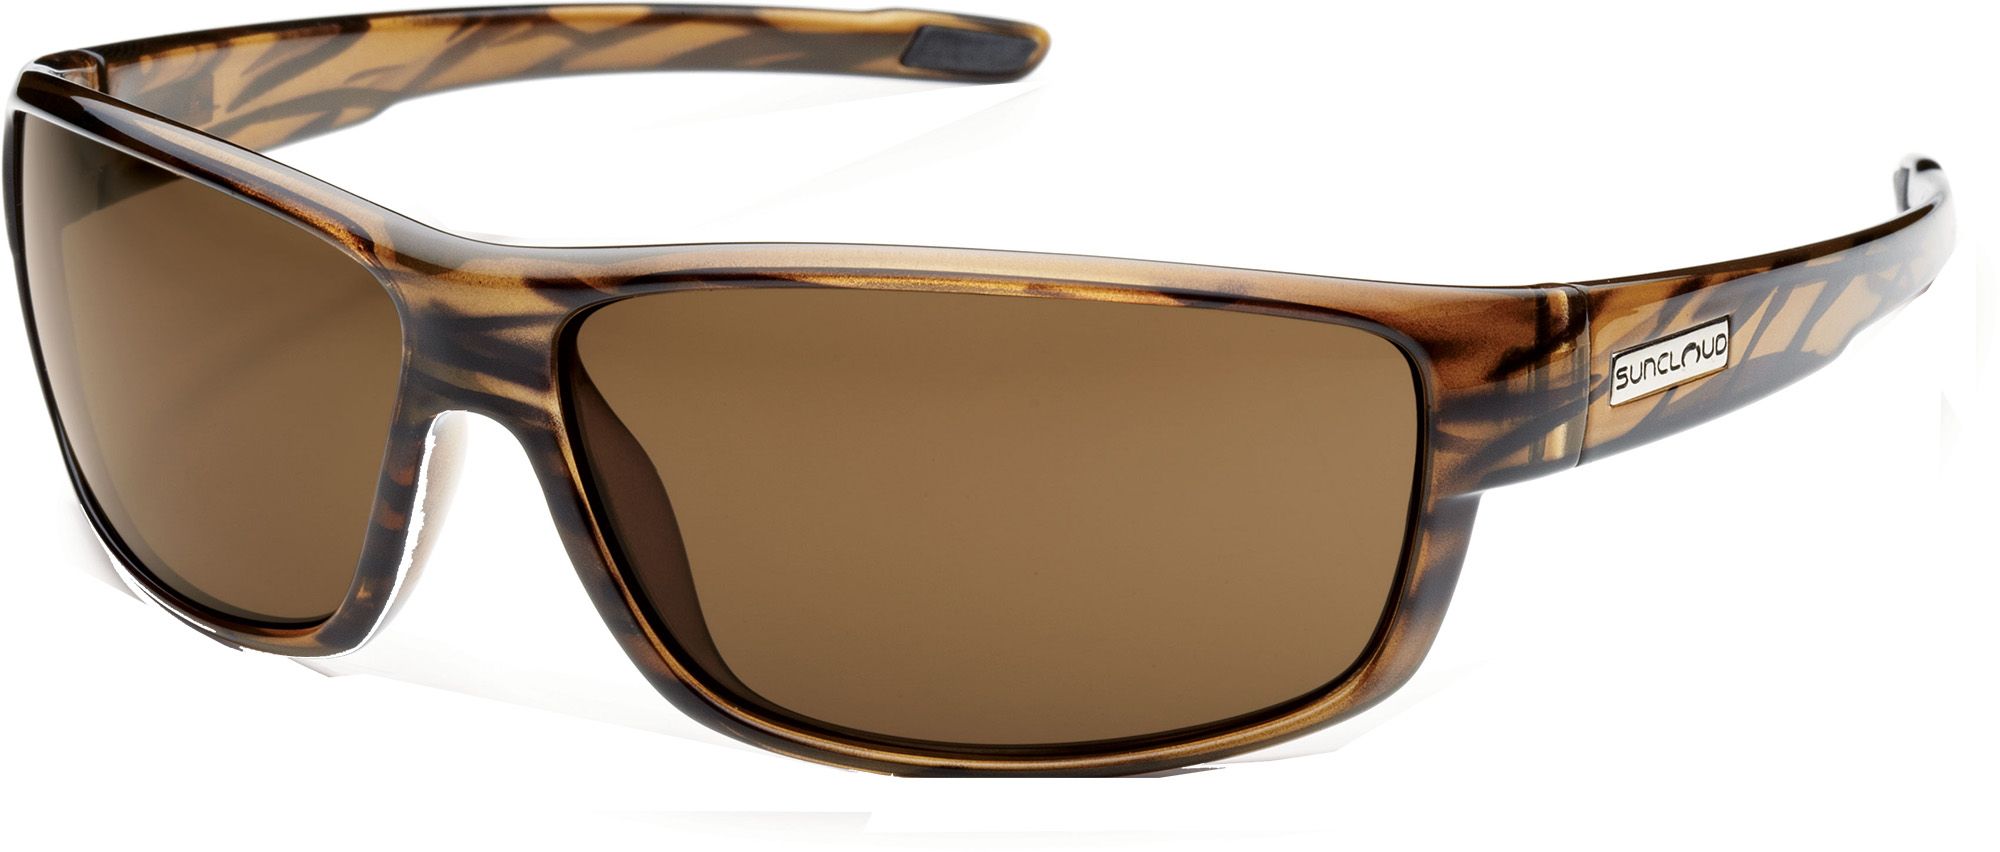 Photos - Sunglasses Suncloud Voucher Polarized , Men's, Brown/Stripe 17AF9AVCHRBRWNS